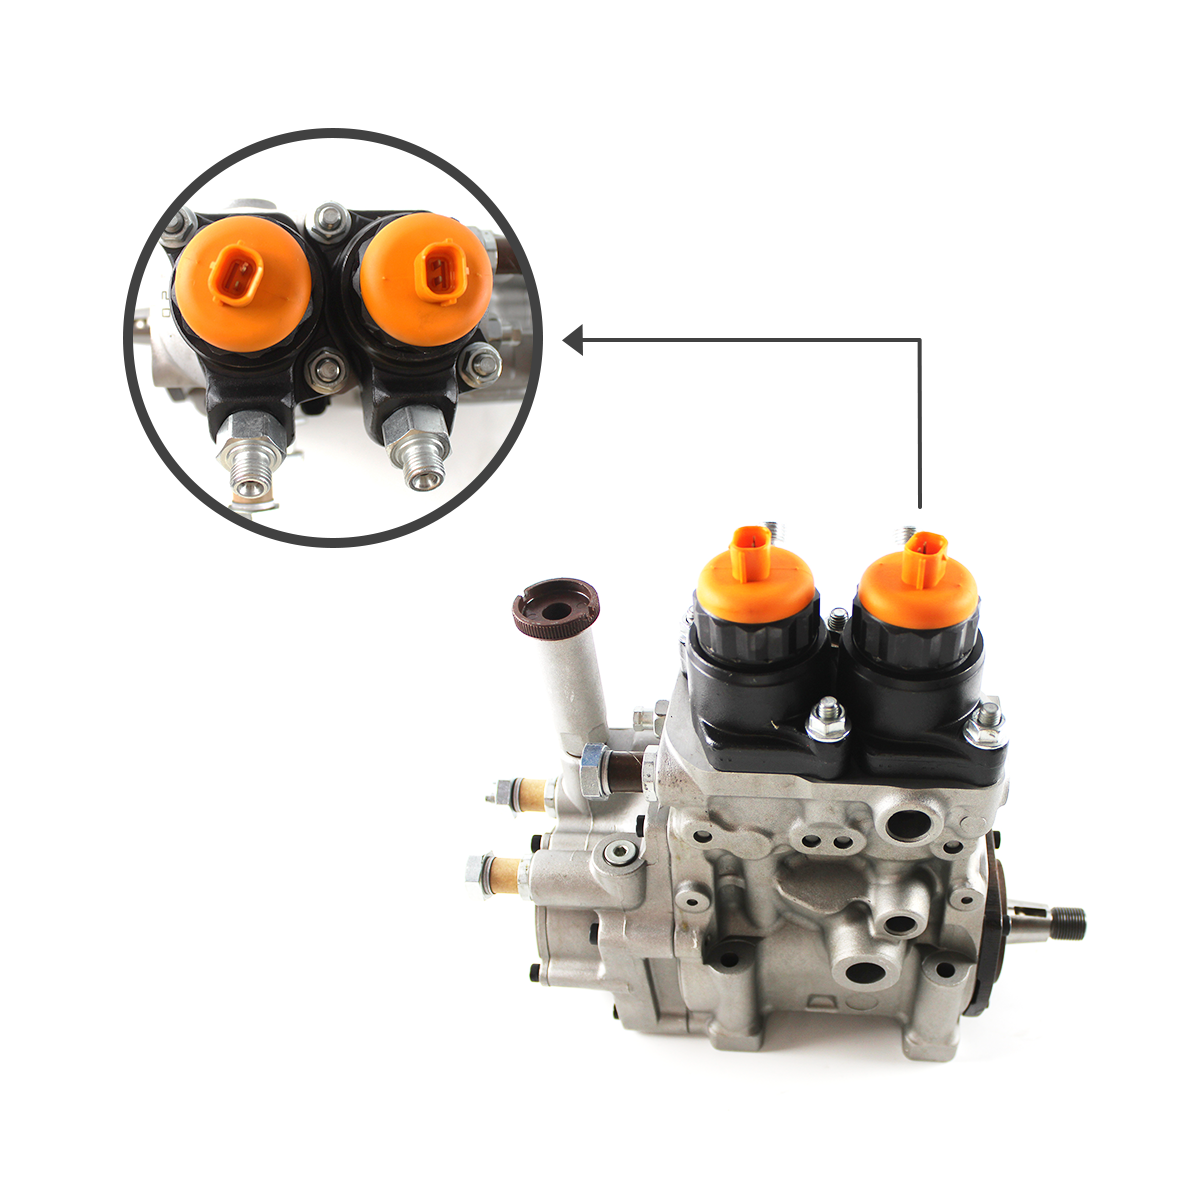 094000-0750 6252-71-1110 Fuel Injection Pump for Komatsu SAA6D125E Engine - Sinocmp